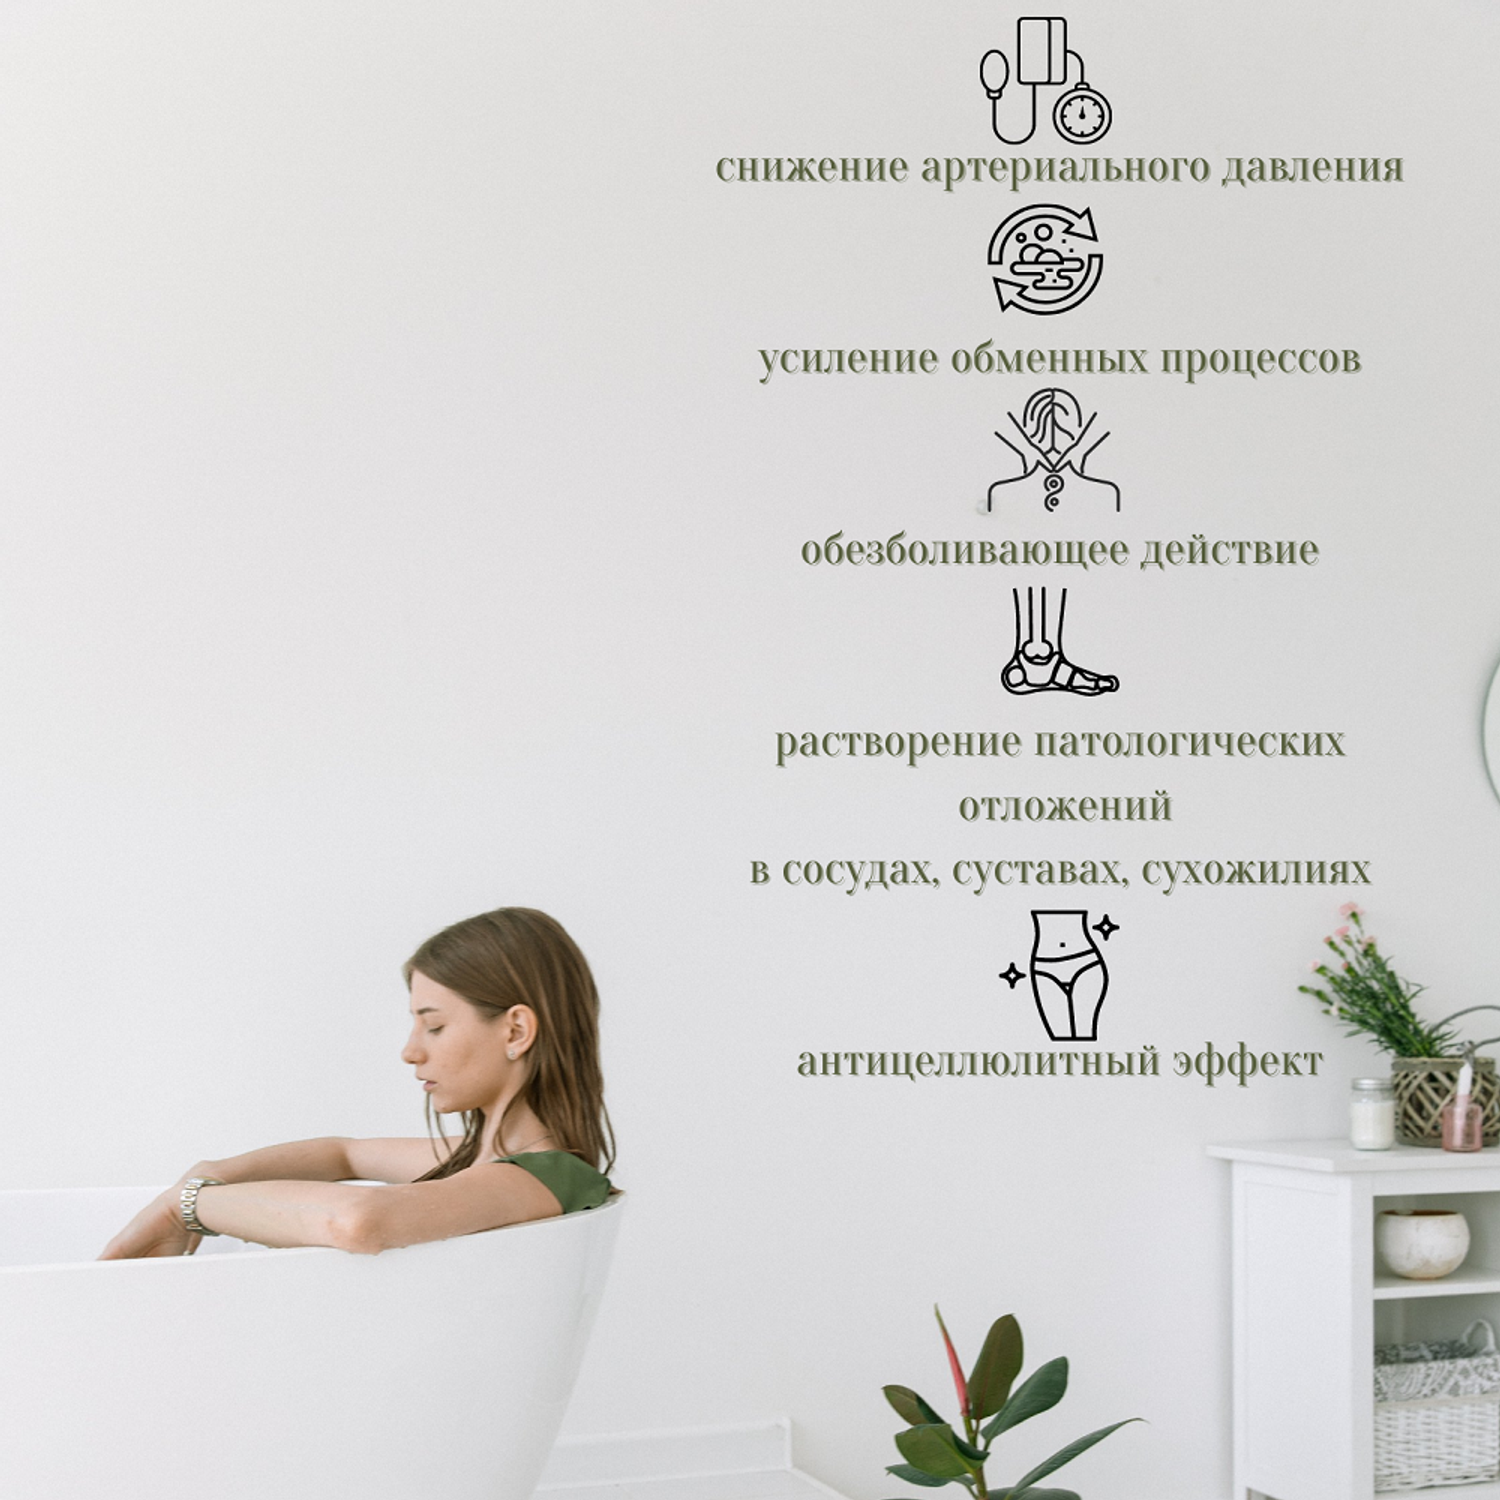 Скипидарная эмульсия желтая Smart Cosmetics Скипидарные ванны А.С. Залманова 250 мл - фото 2